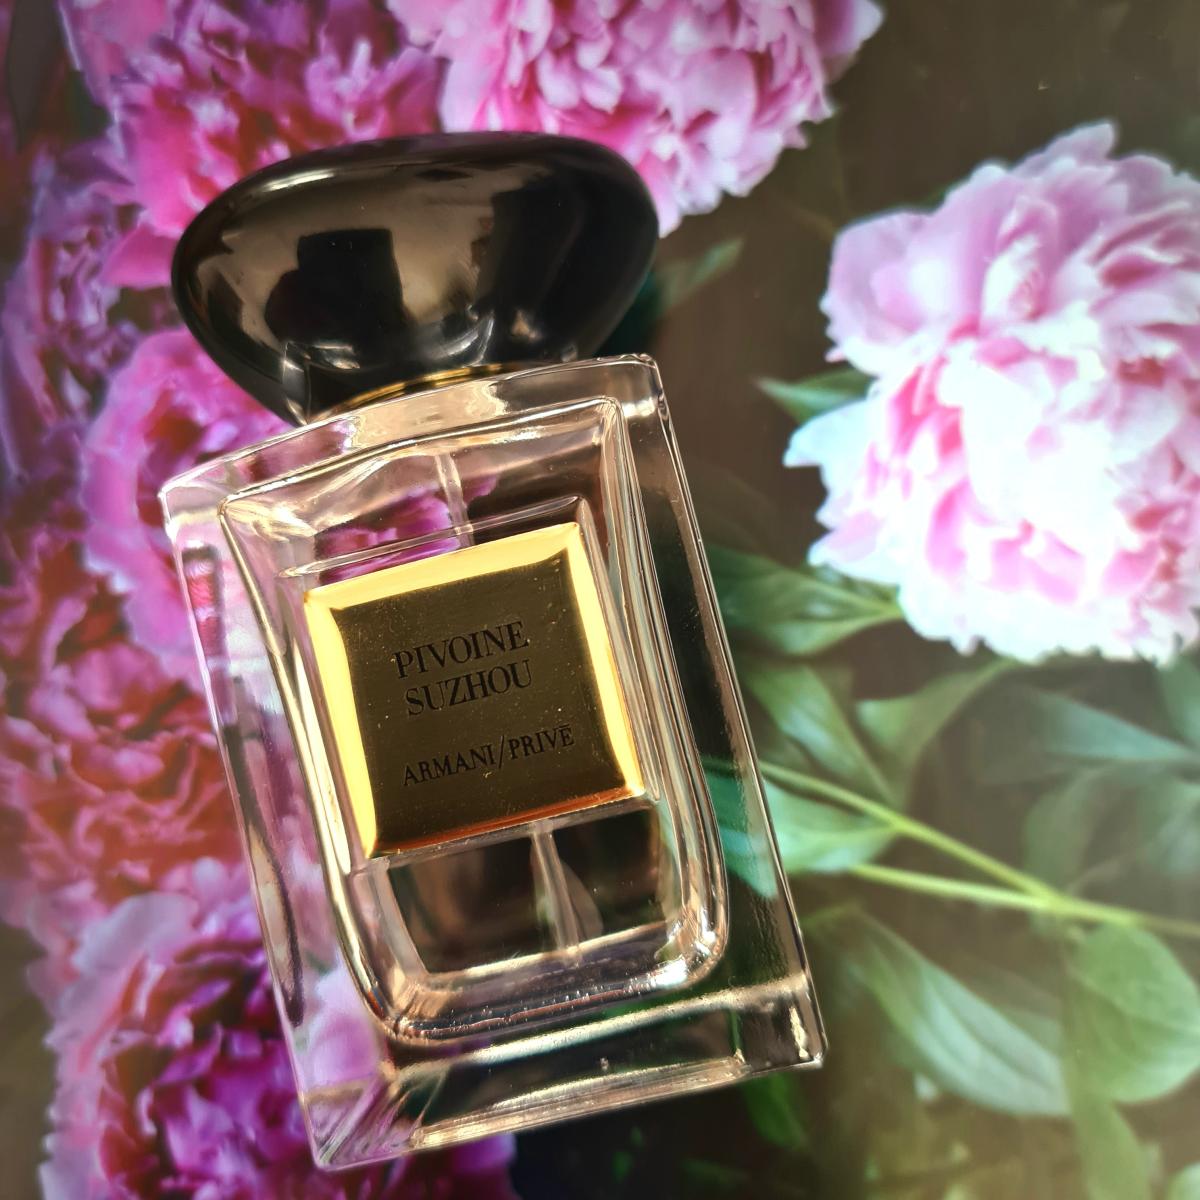 Pivoine Suzhou Giorgio Armani perfume - a fragrance for women 2014